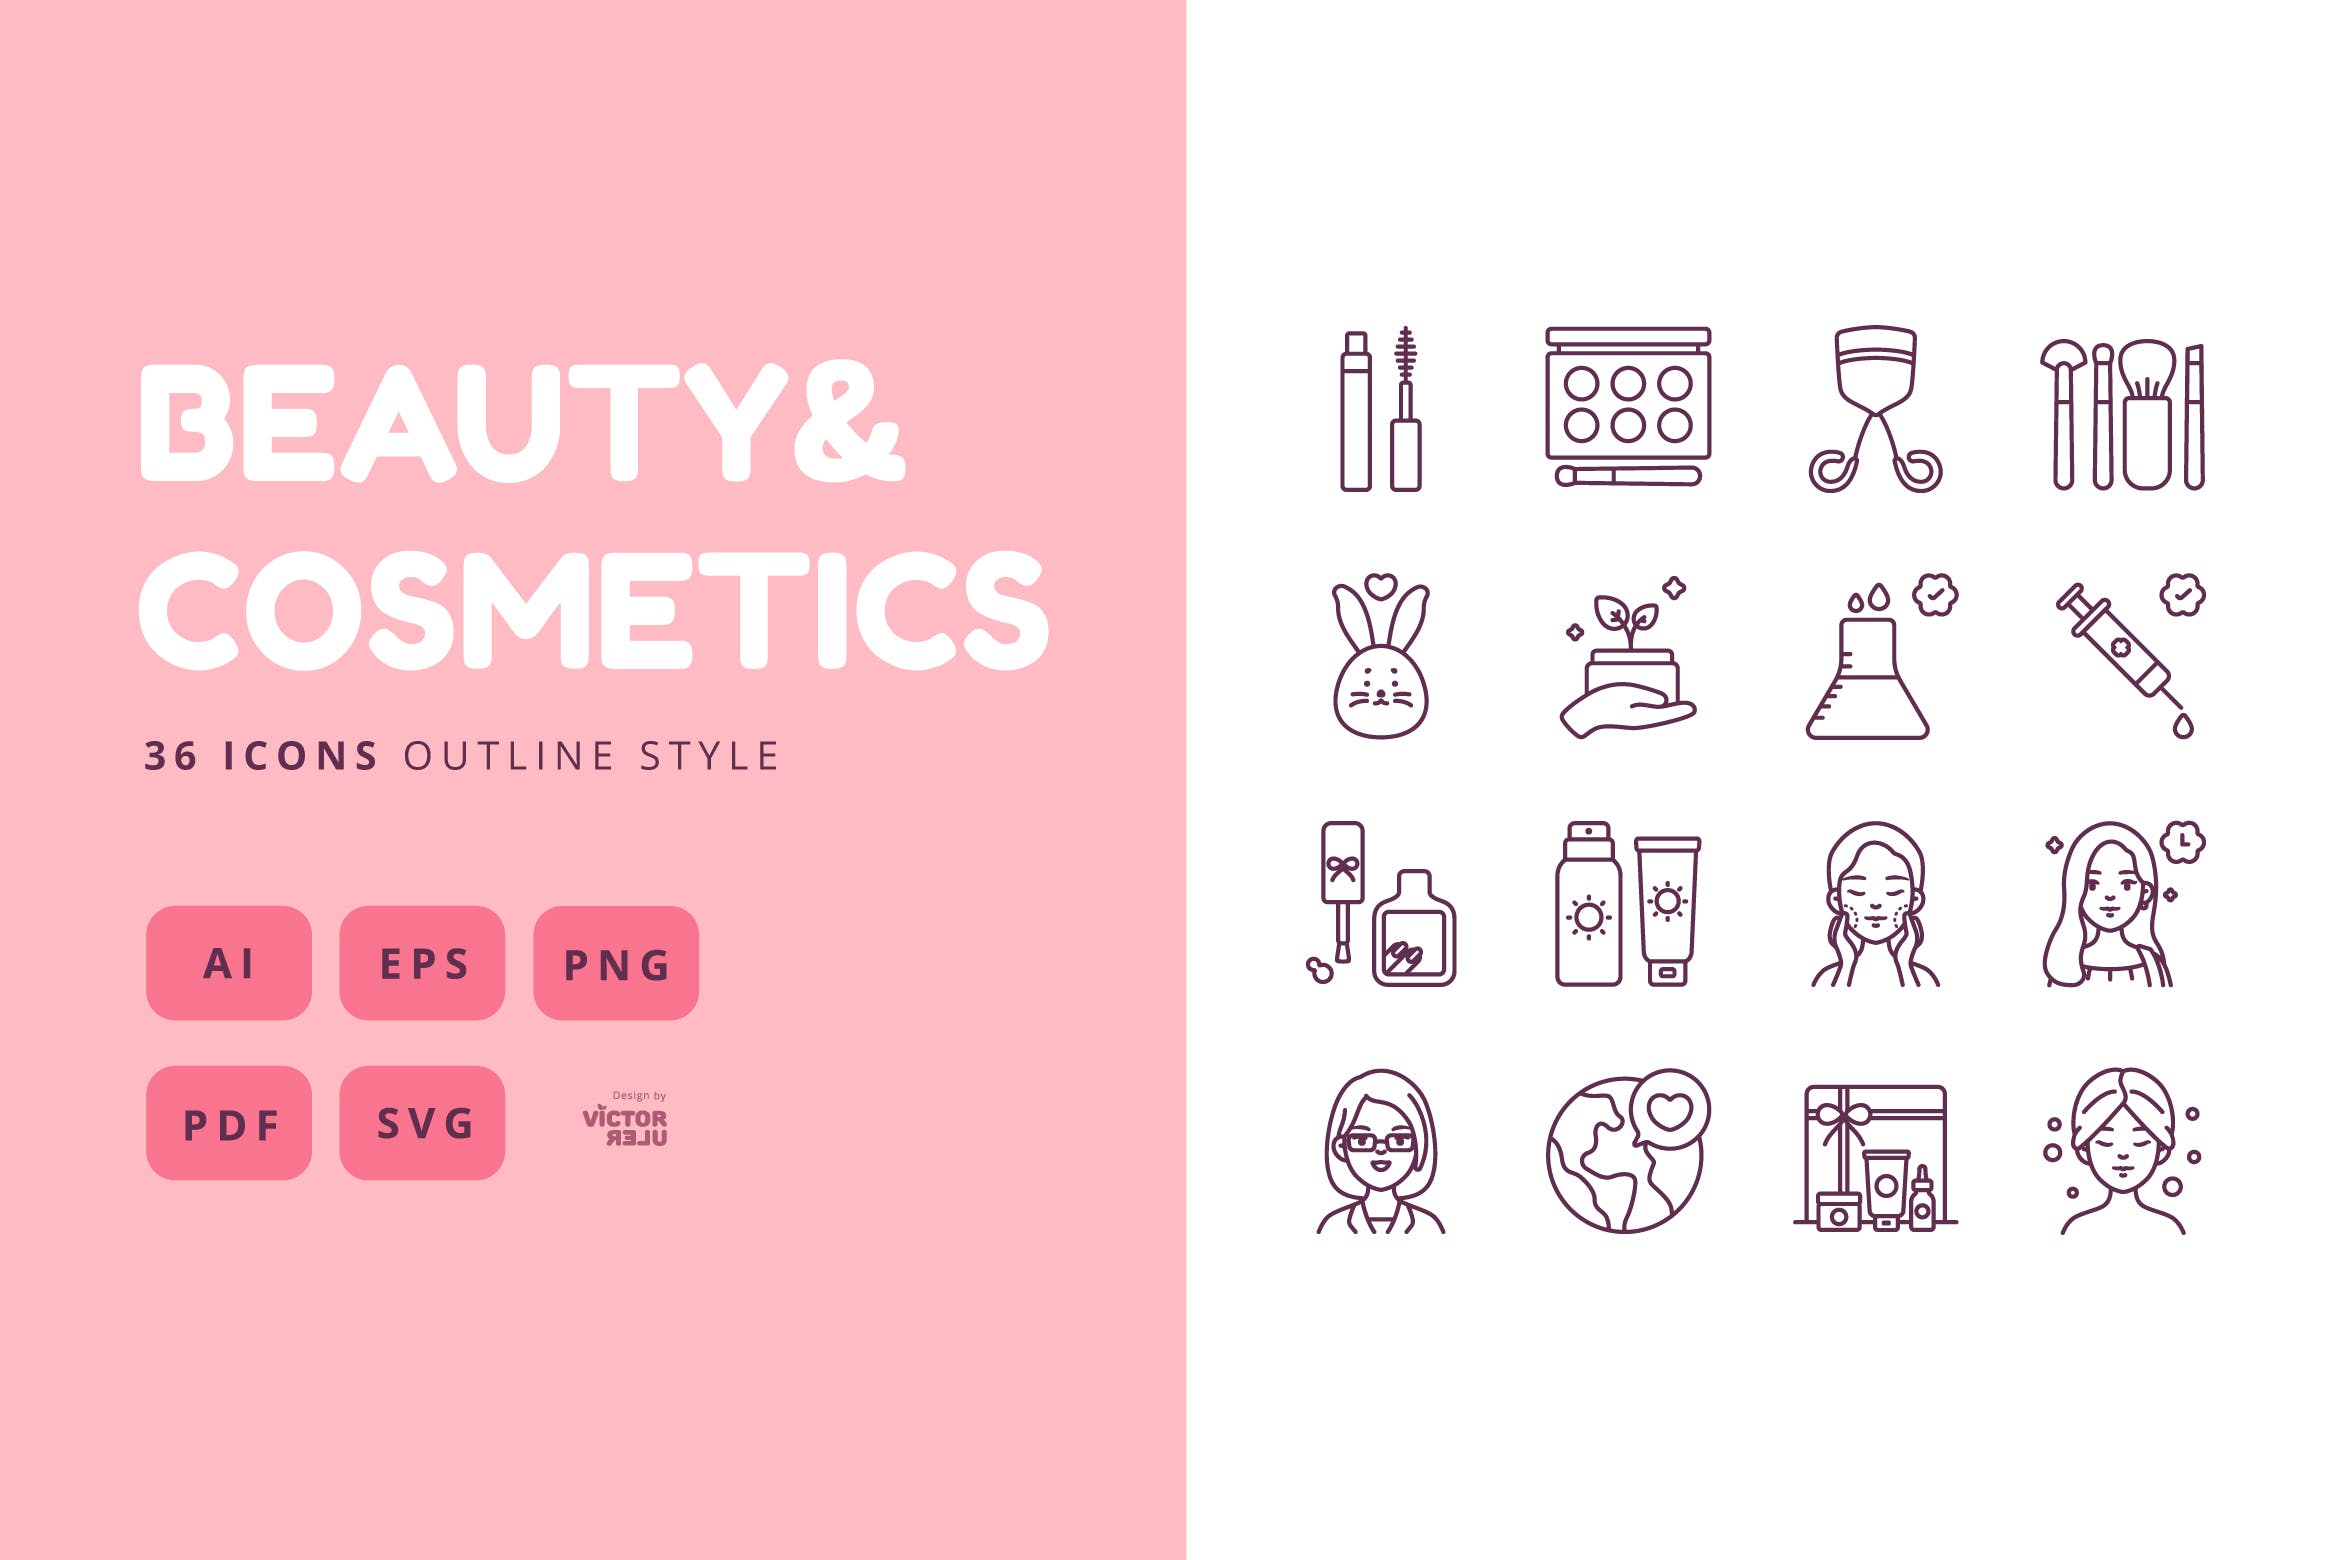 矢量可编辑36枚轮廓风格美容&化妆品图标素材免费下载